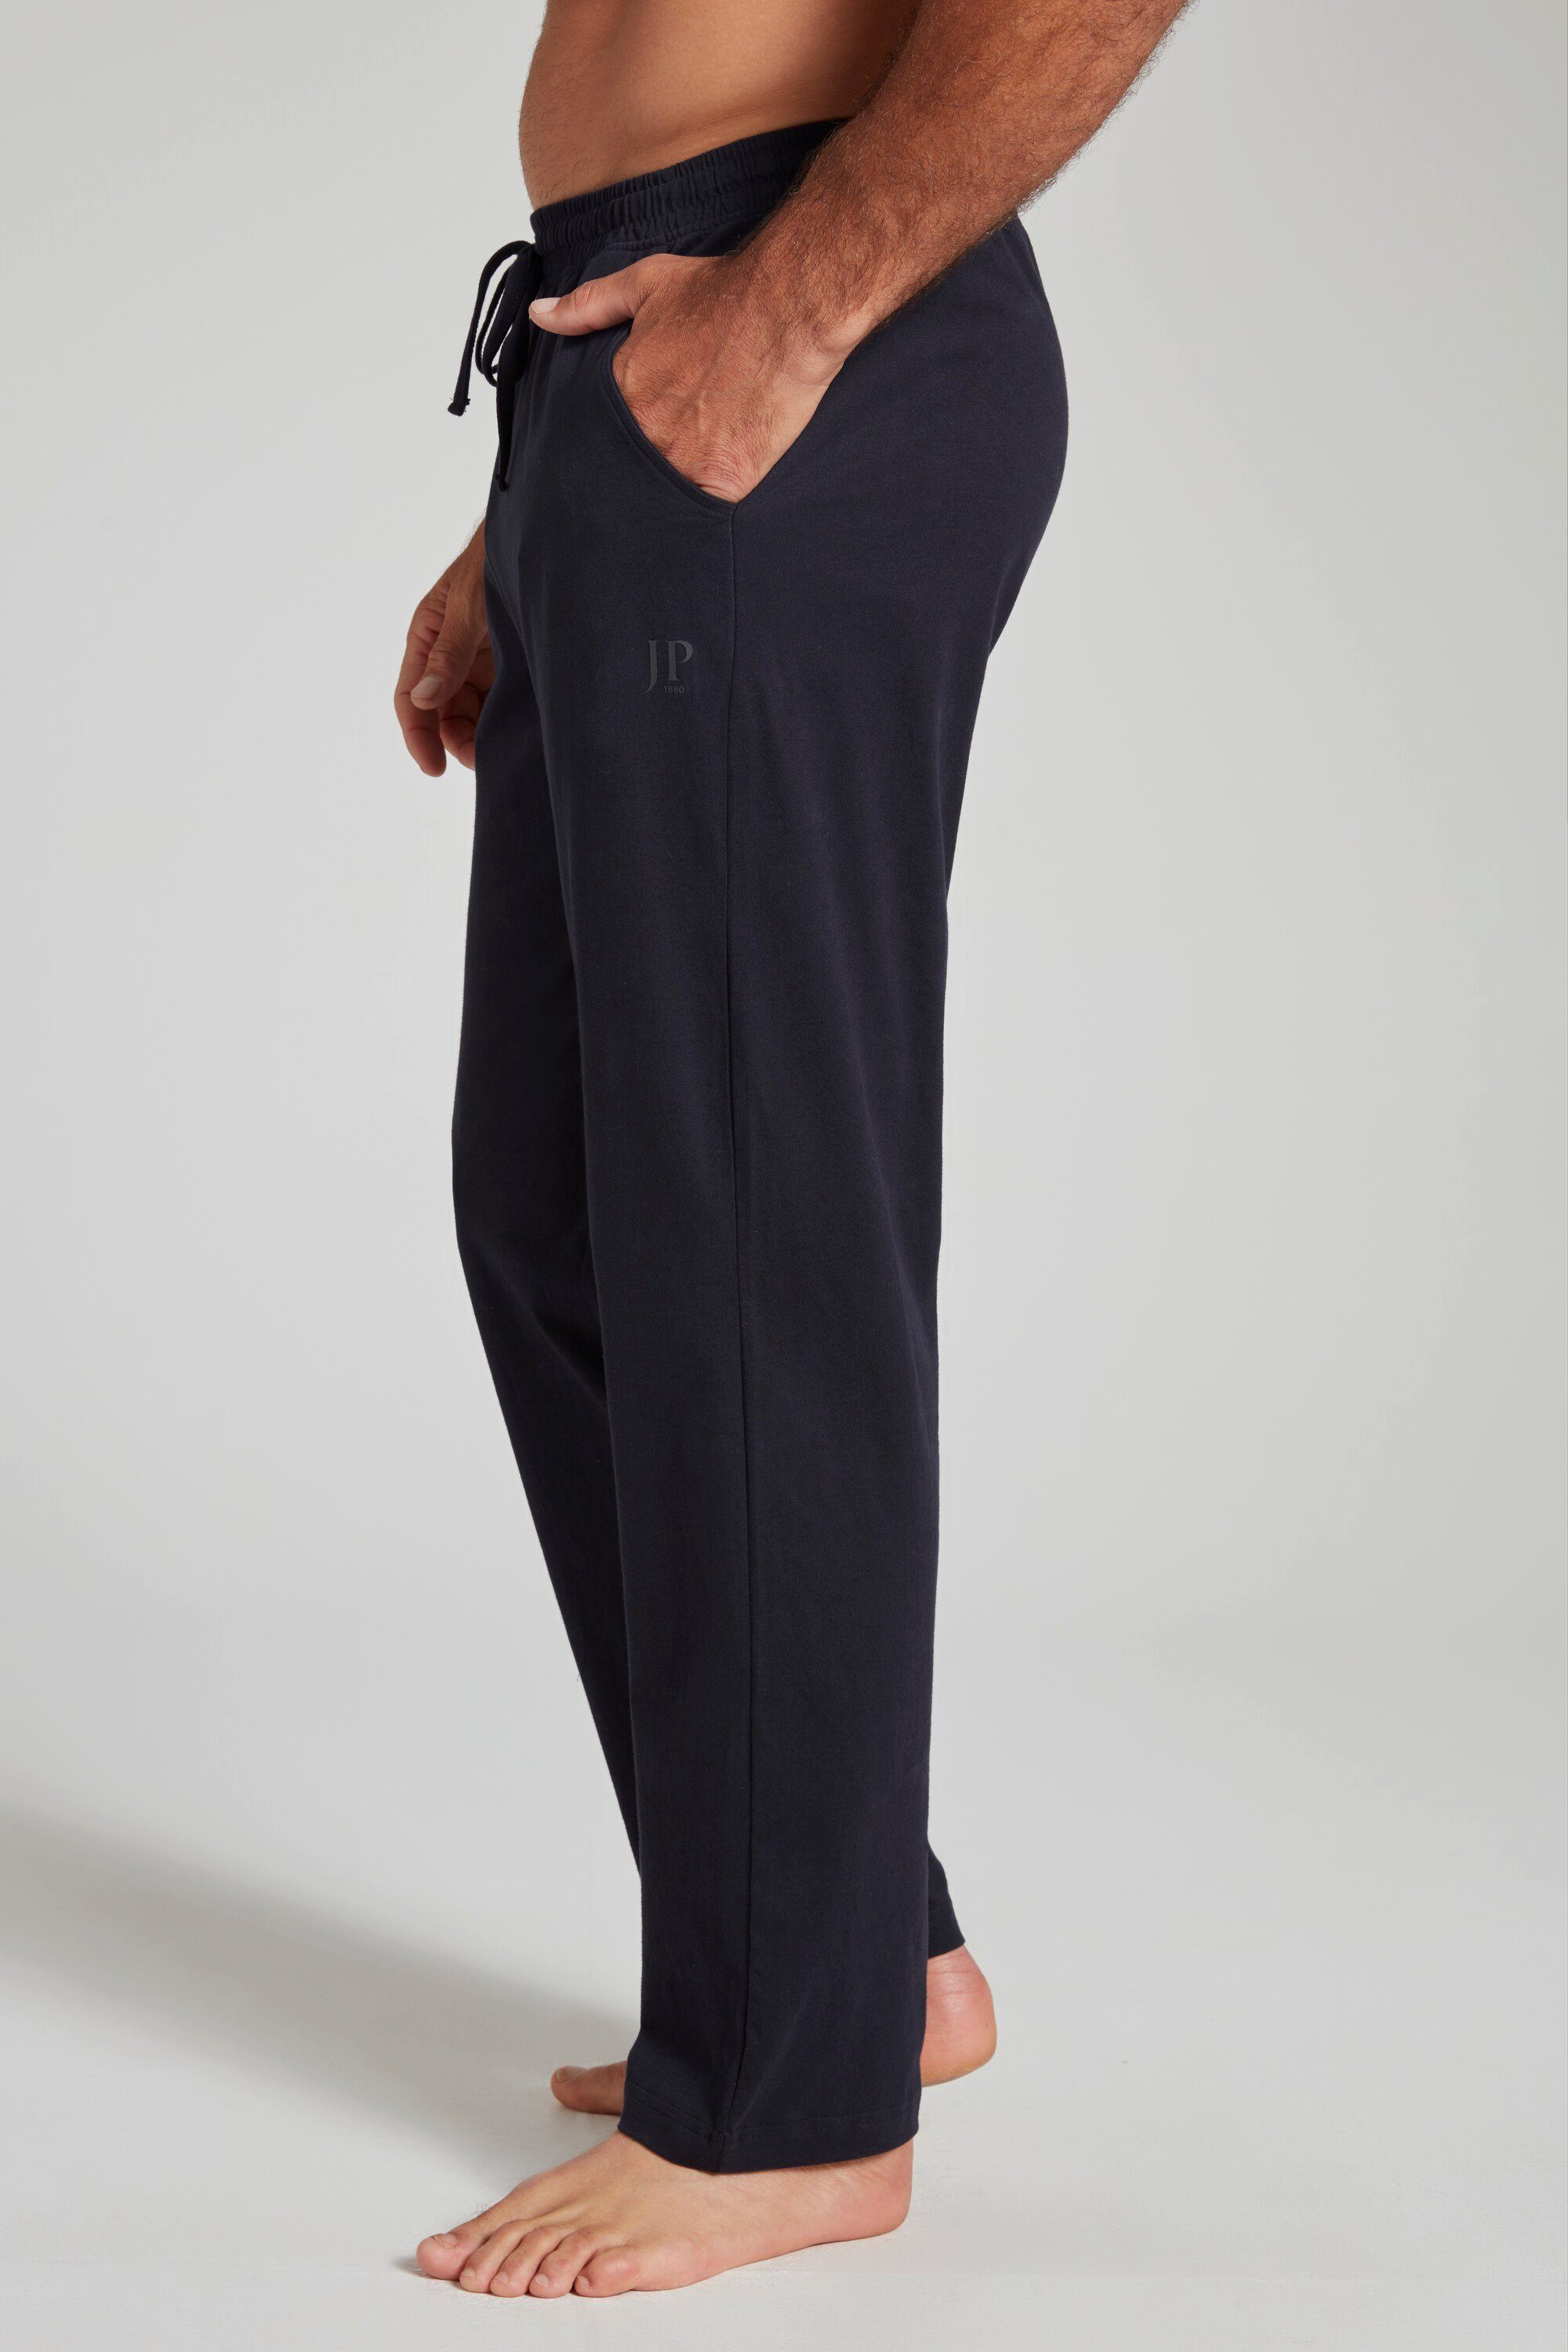 Elastikbund lange JP1880 marine Homewear dunkel Schlafanzug-Hose Schlafanzug Form